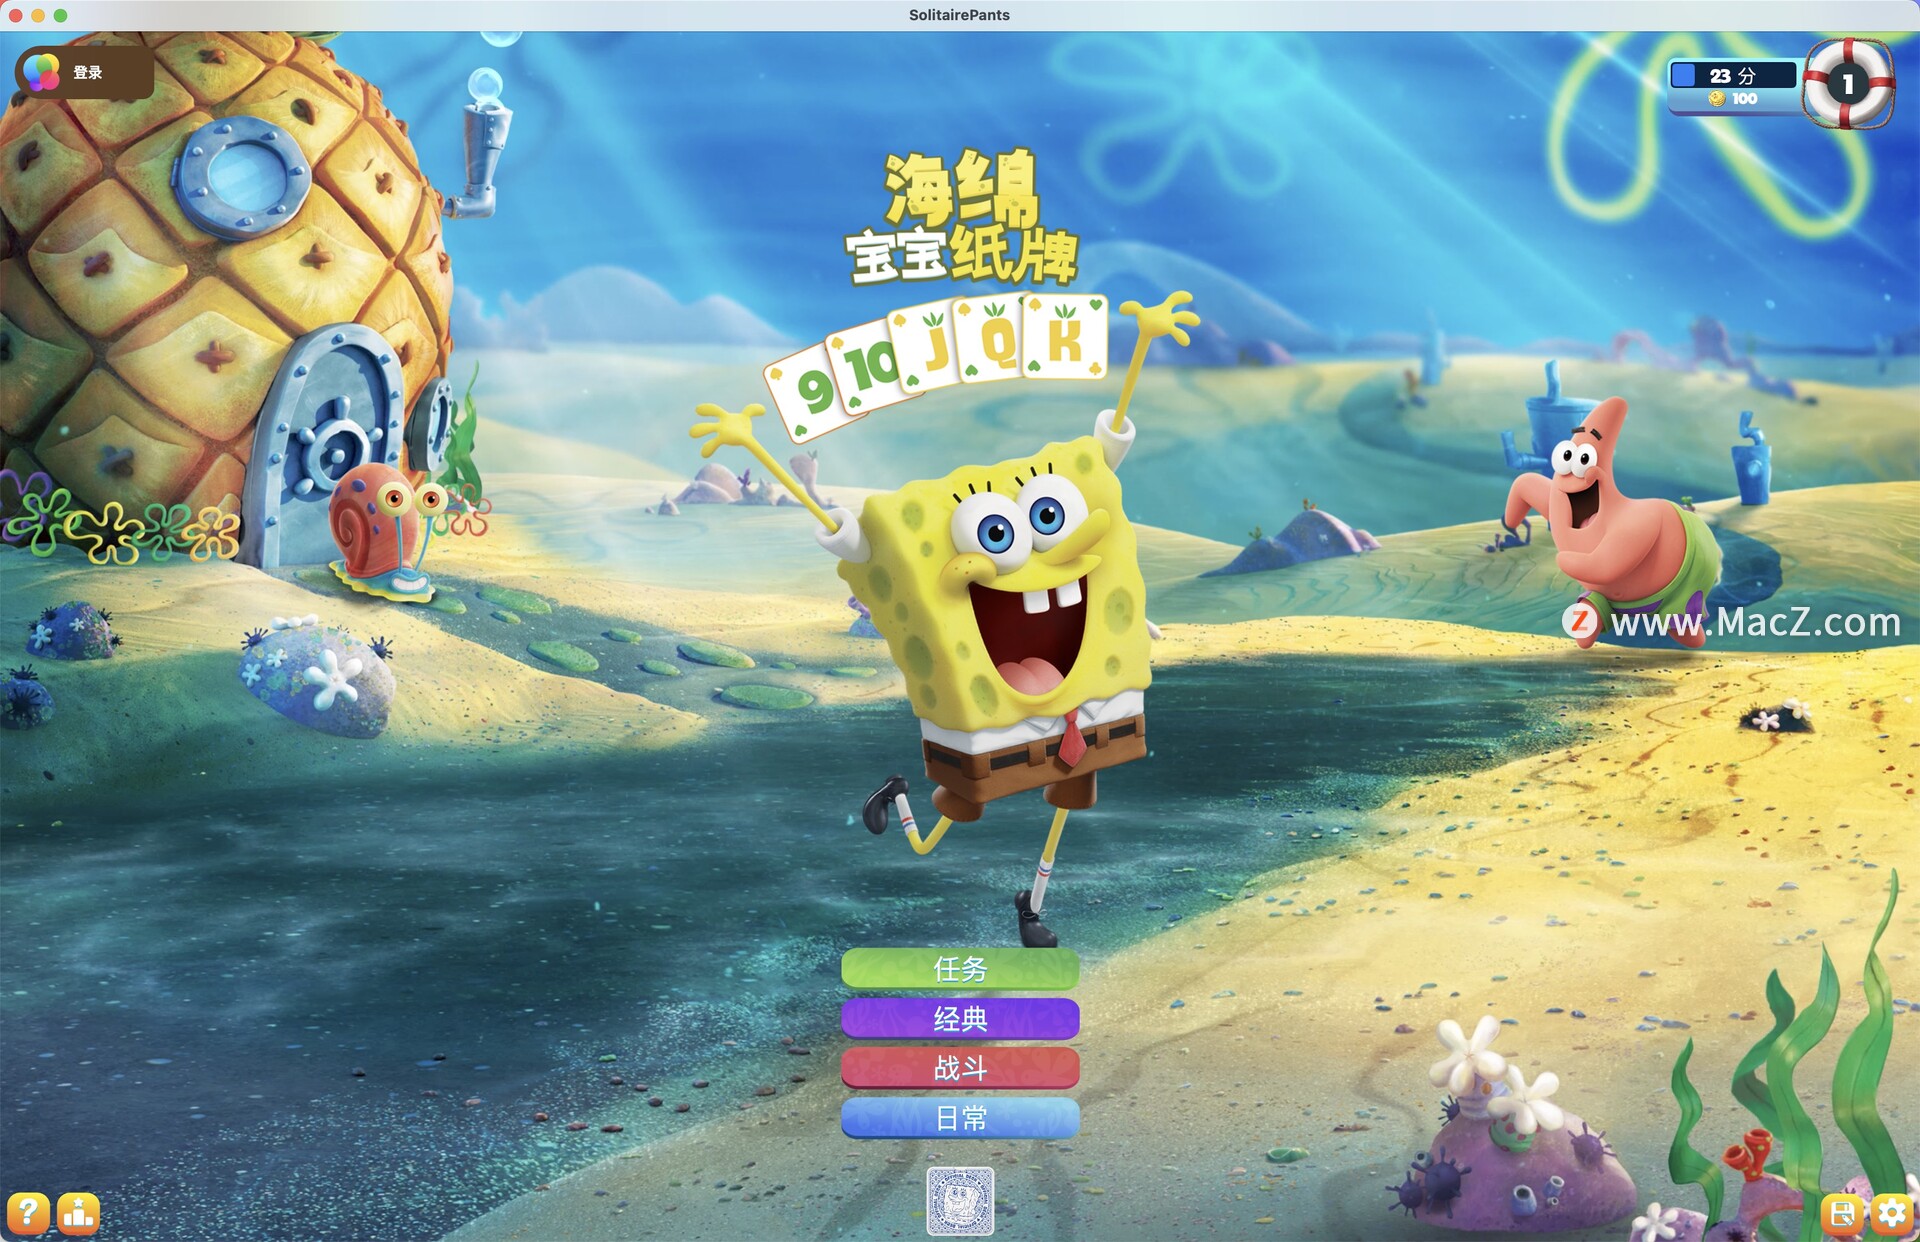 海绵宝宝纸牌游戏 SpongeBob SolitairePants for mac(休闲纸牌游戏)